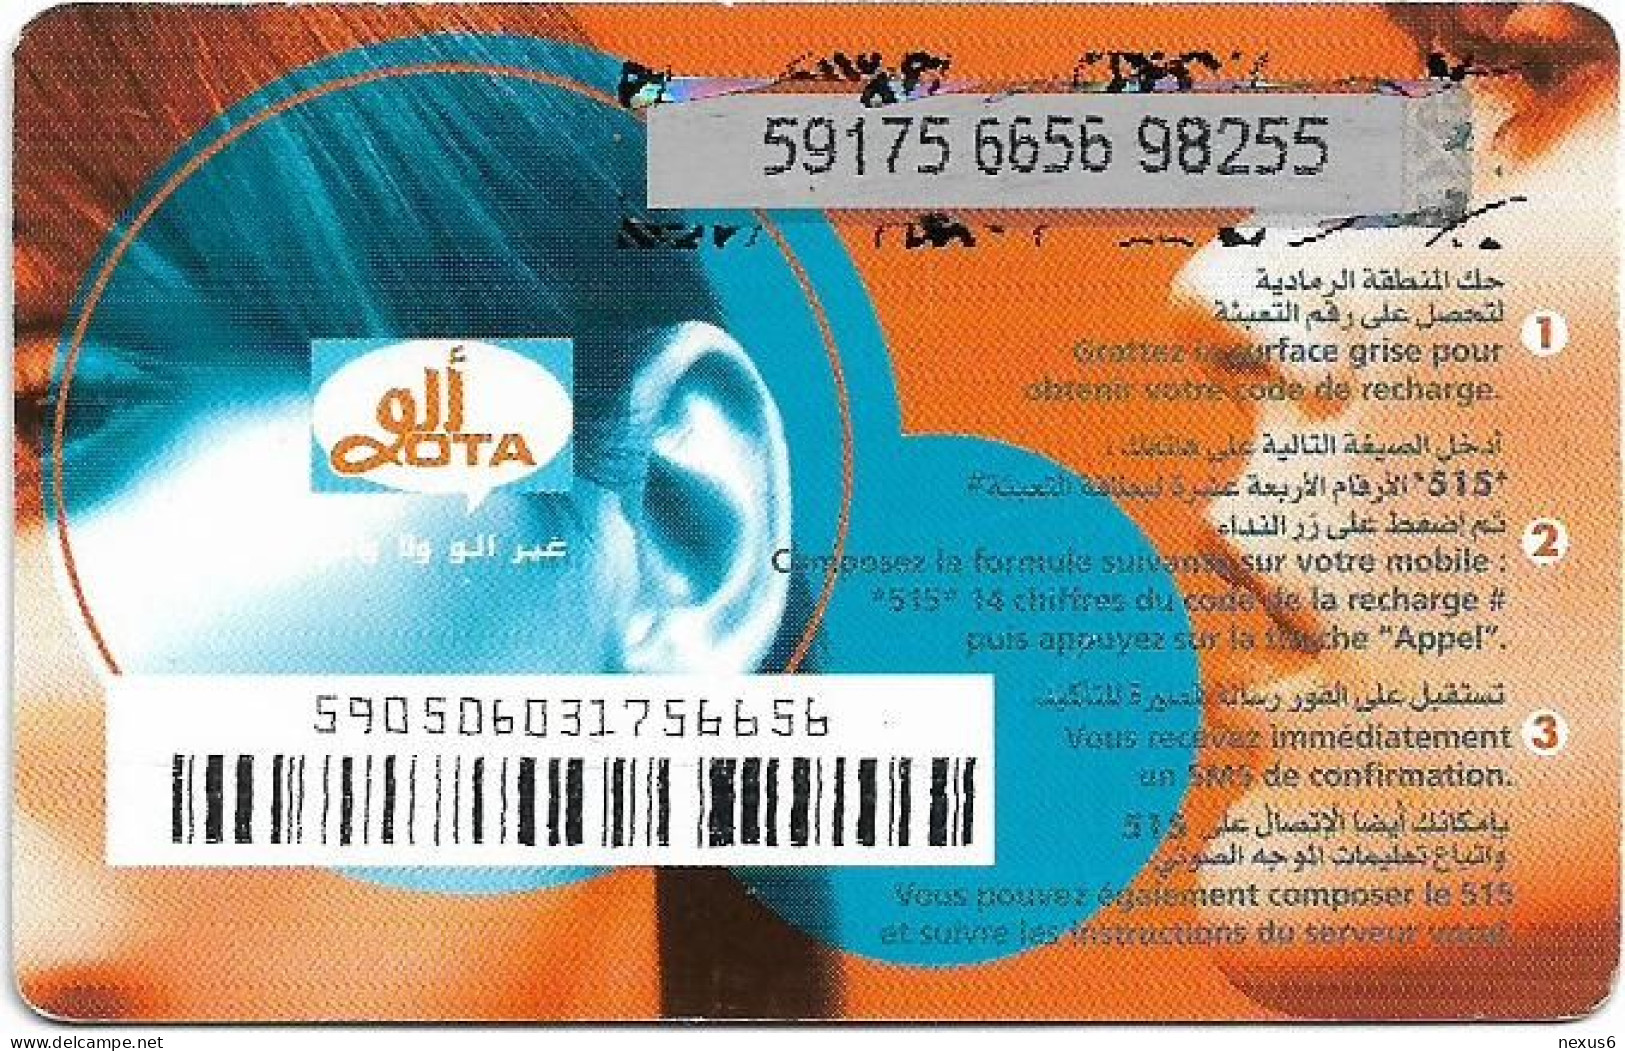 Algeria - Allo OTA - Allo OTA Blue 2 (Grey PIN Background), GSM Refill 500DA, Used - Algerien